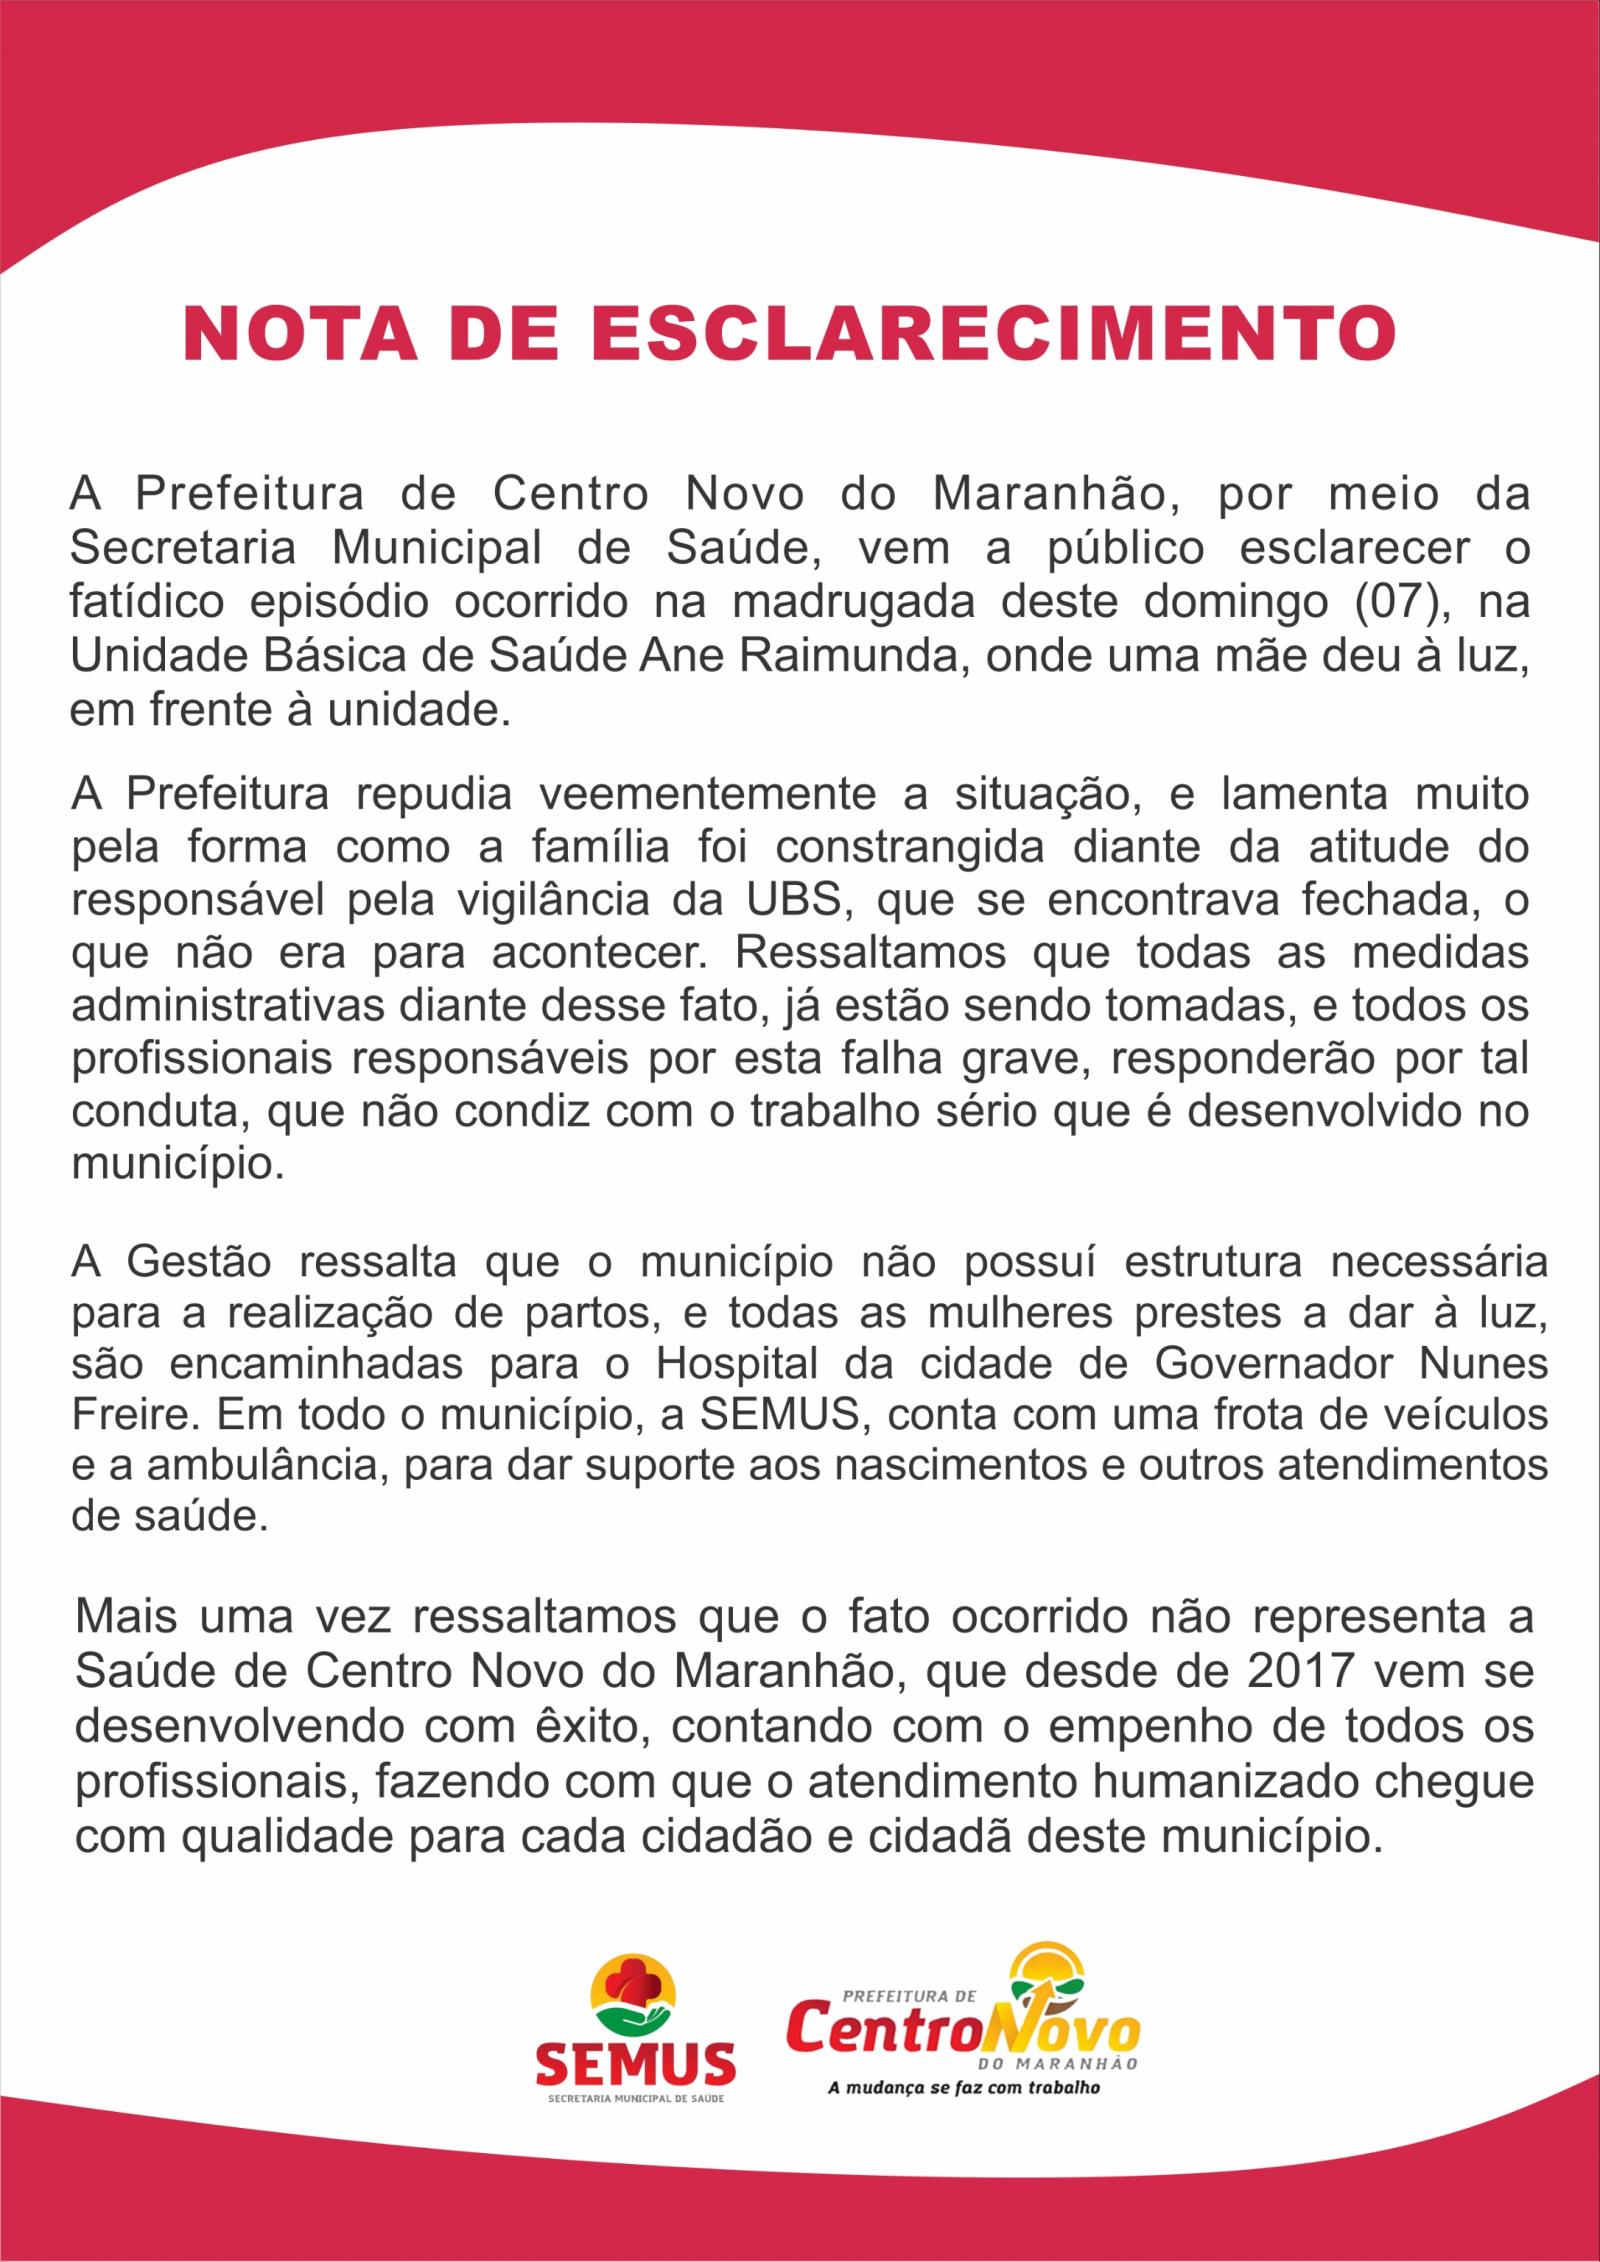 Prefeitura de Centro Novo do Maranhão tenta explicar o inexplicável